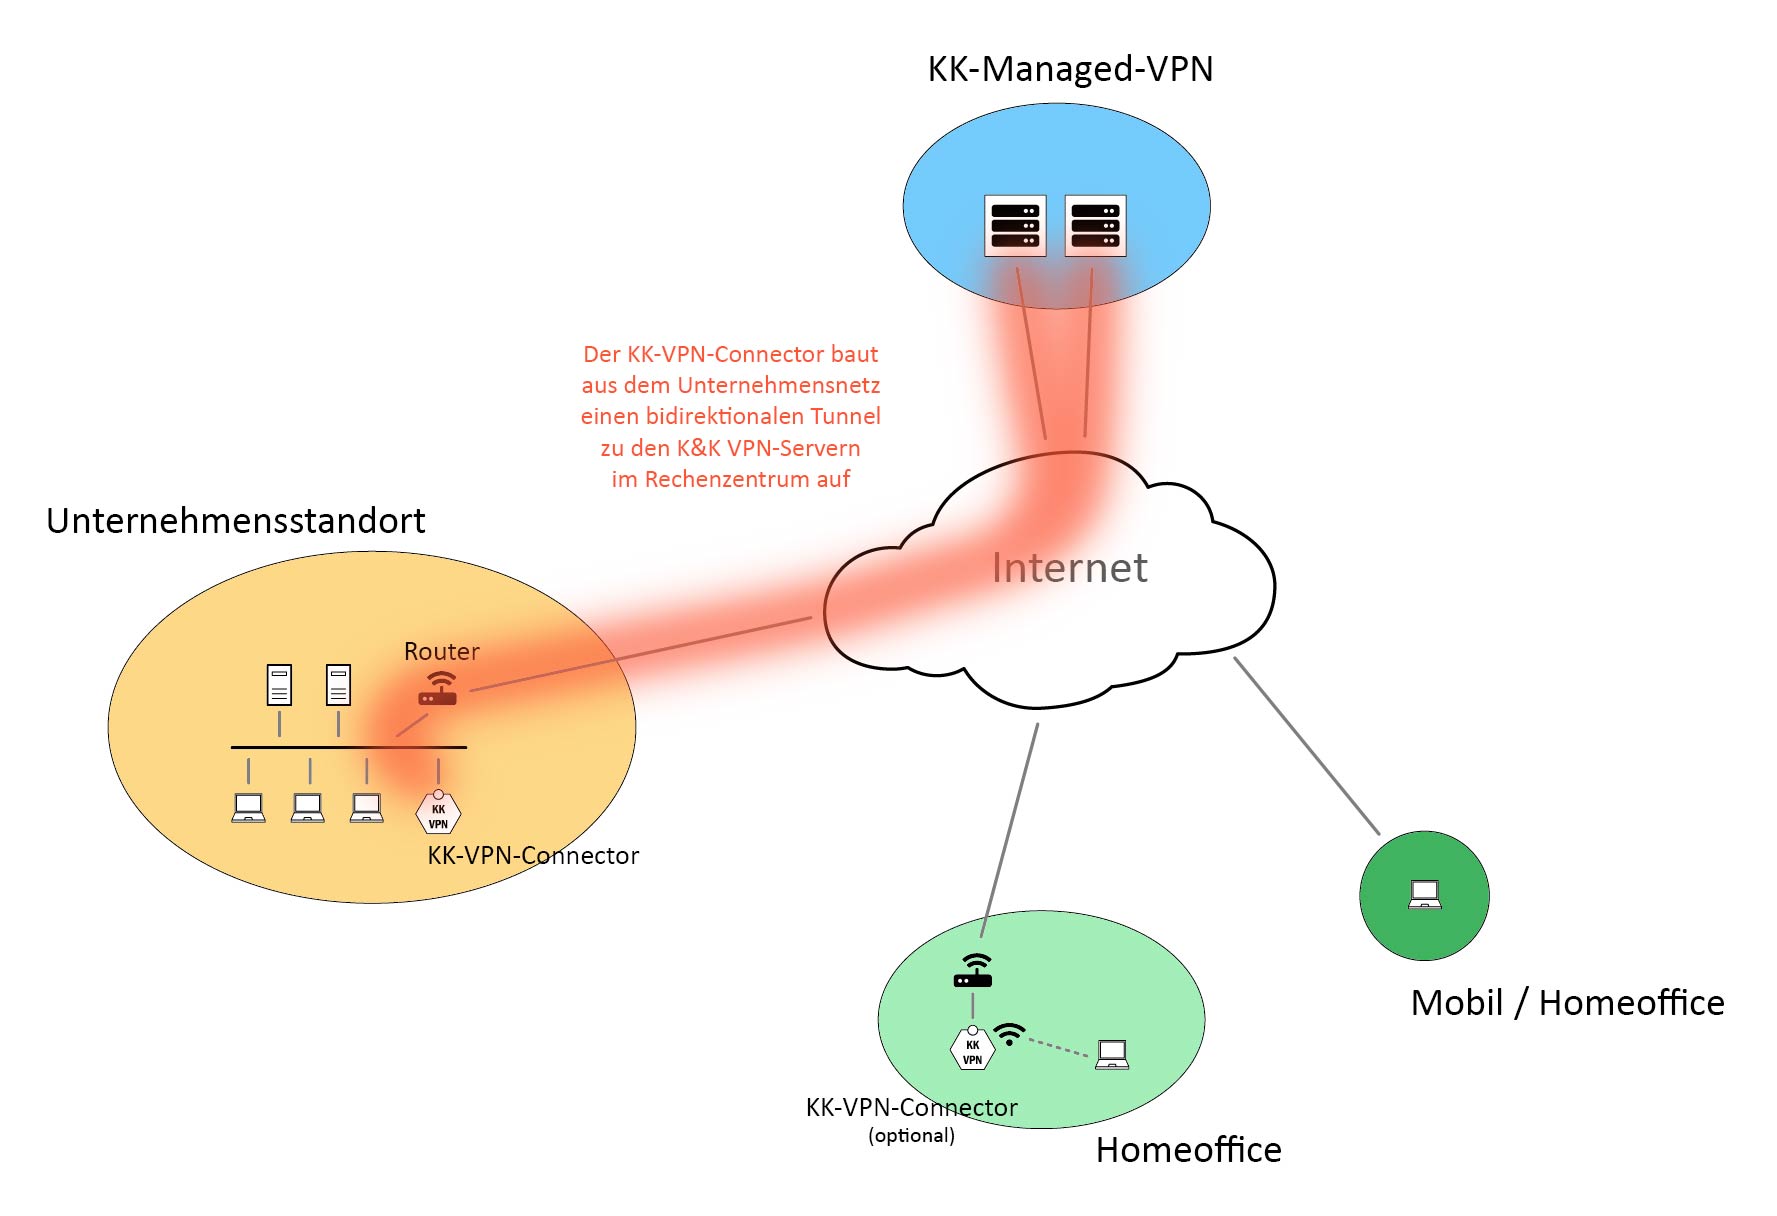 Bidirektionale Anbindung des Unternehmensnetzwerks an den KK-Managed-VPN Service